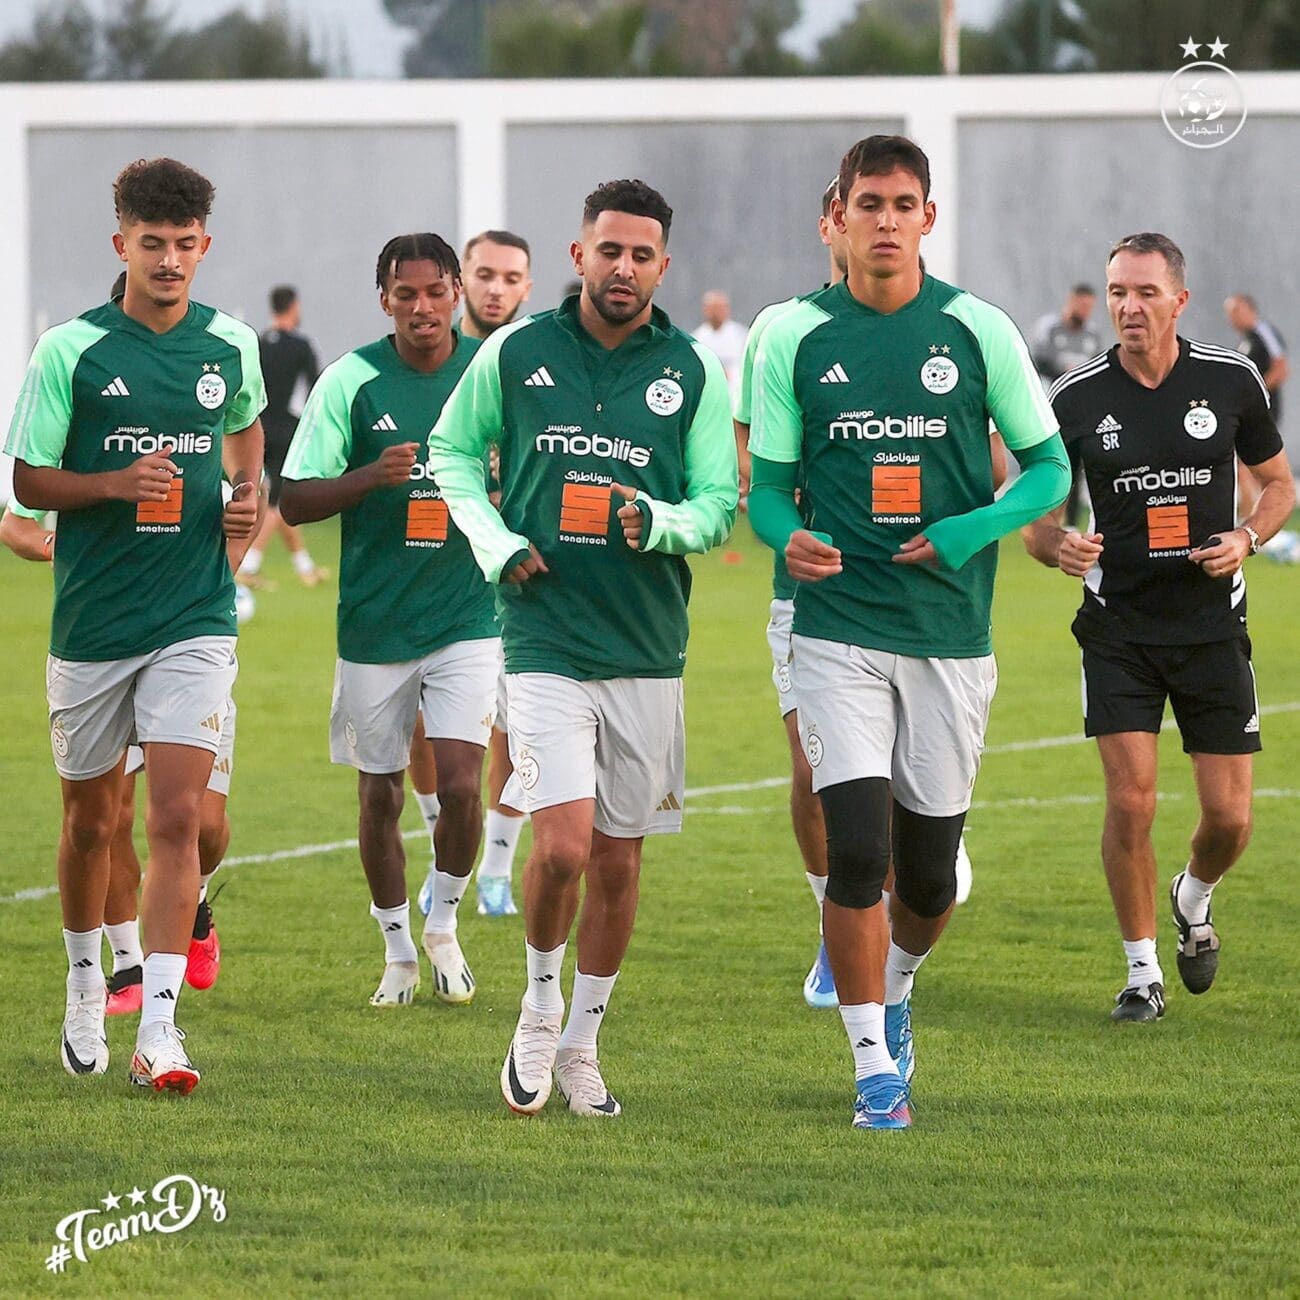 تدريبات منتخب الجزائر استعدادا لودية الرأس الأخضر - مصدر الصورة: الحساب الرسمي لمنتخب الجزائر على تويتر.